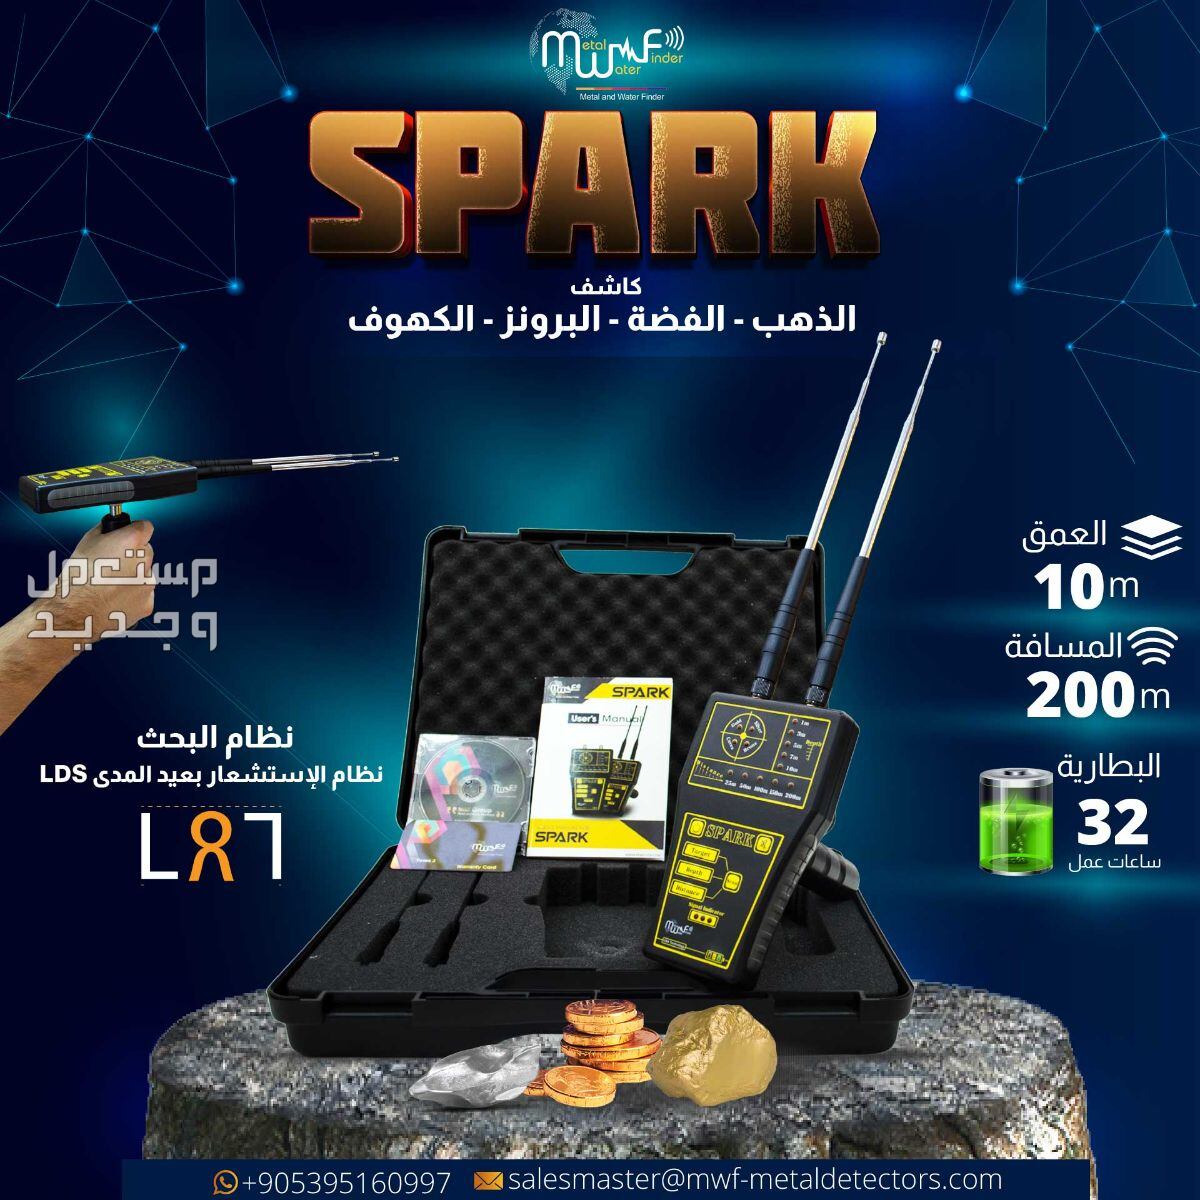 استعد لرحلة الاستكشاف مع SPARK الجهاز الأمثل للكشف عن الذهب والكهوف